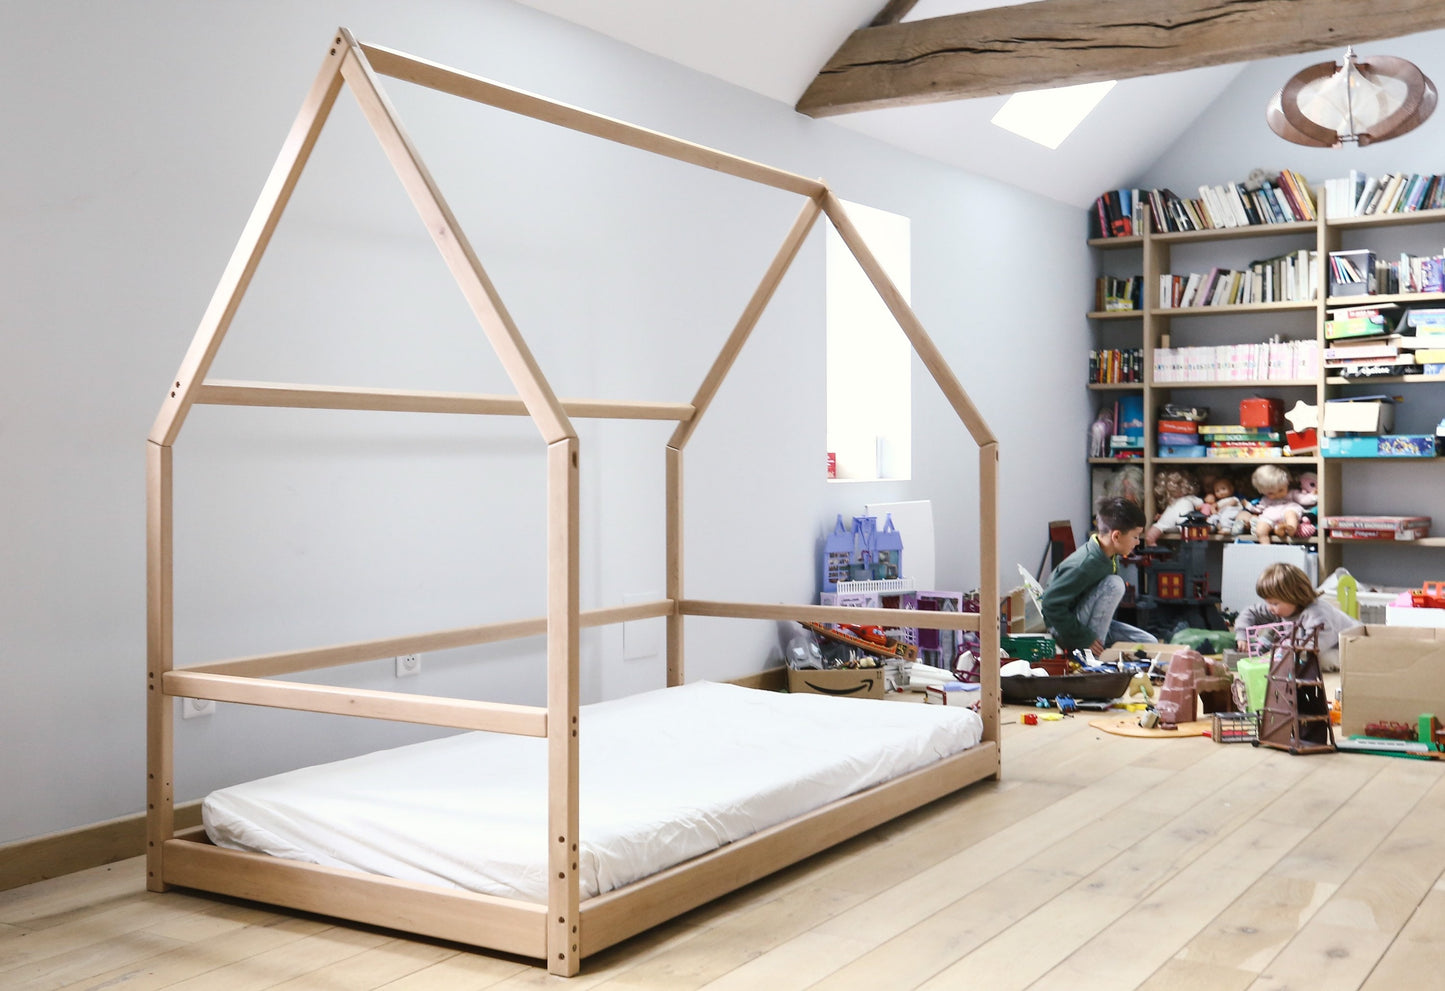 Montessori Floor Bed |Alder Tree Toddler Bed Frame | Cute Bedroom Furniture | Gift For Kids Room Decor